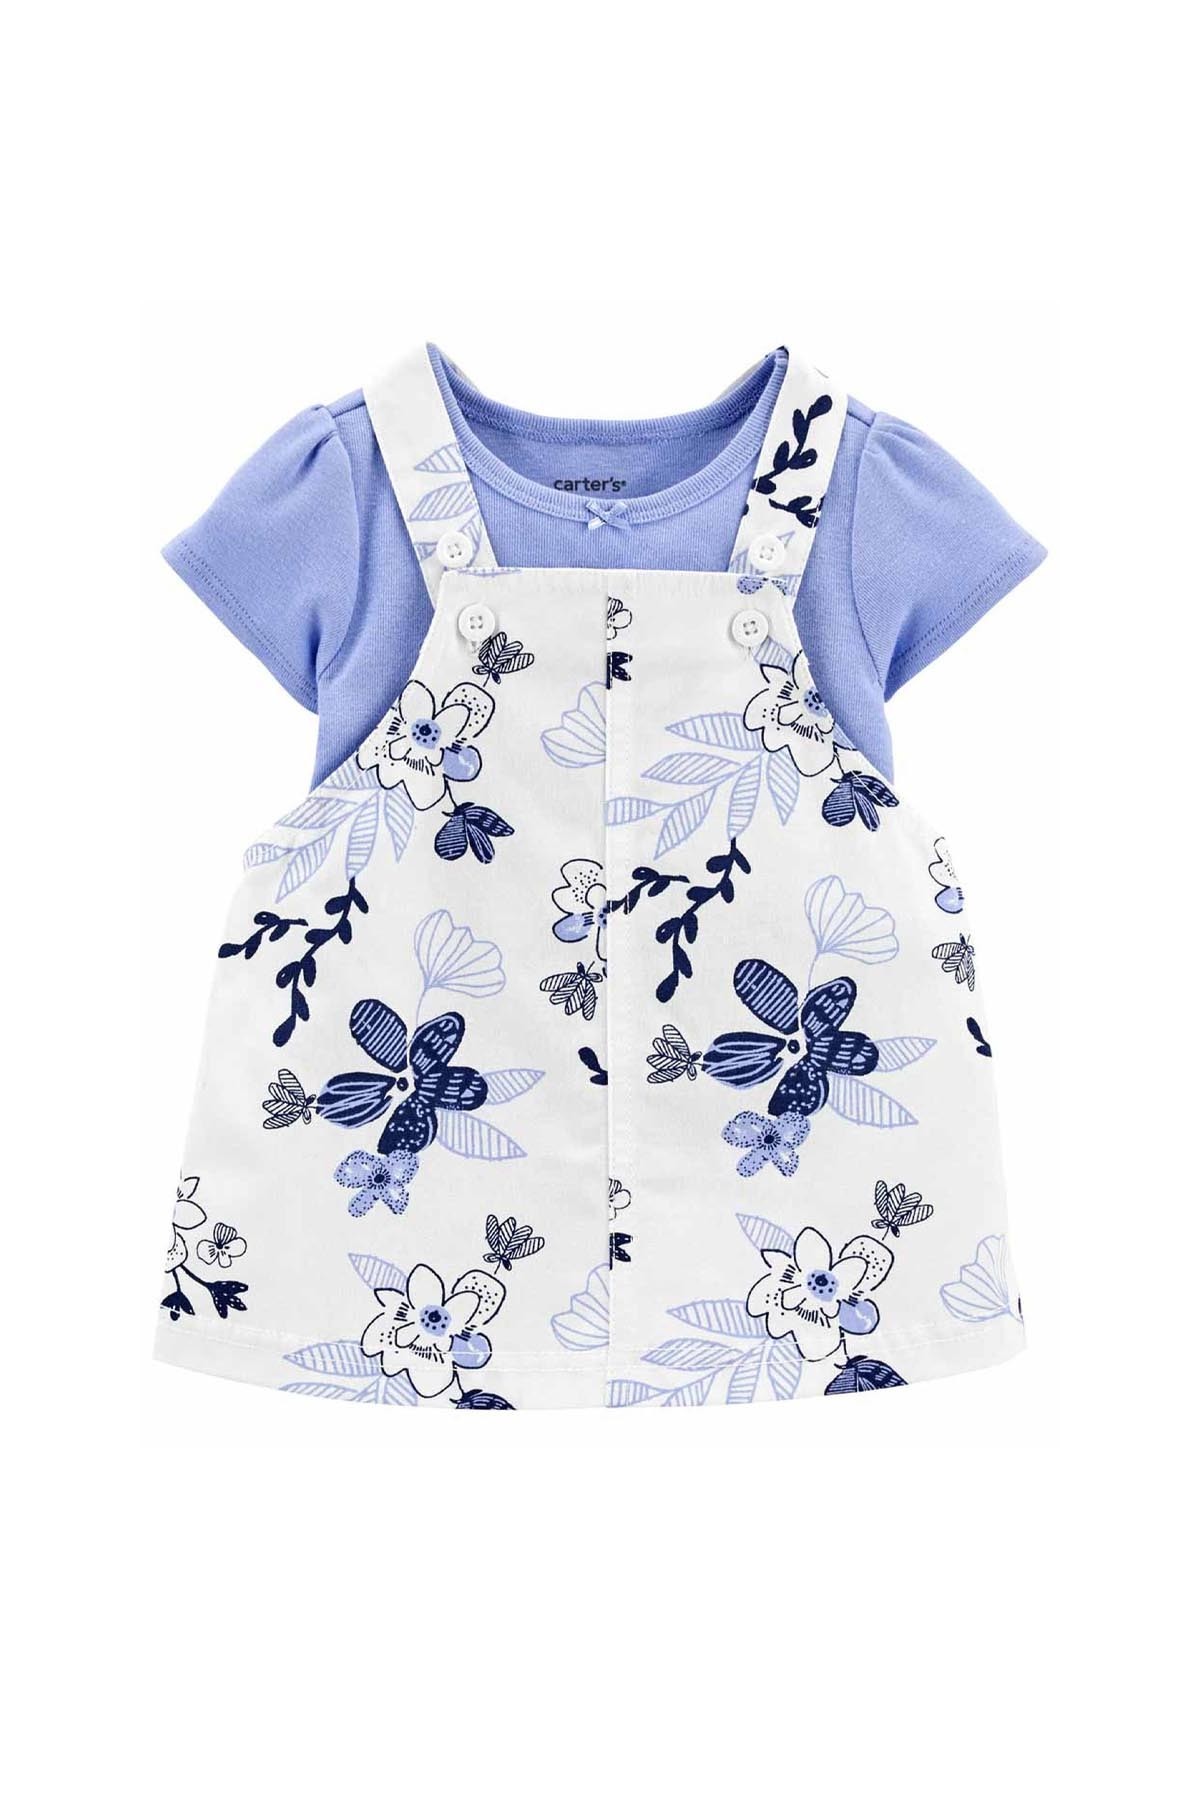 Carter's Kız Bebek Mavi Çiçekli Salopet Set Mavi